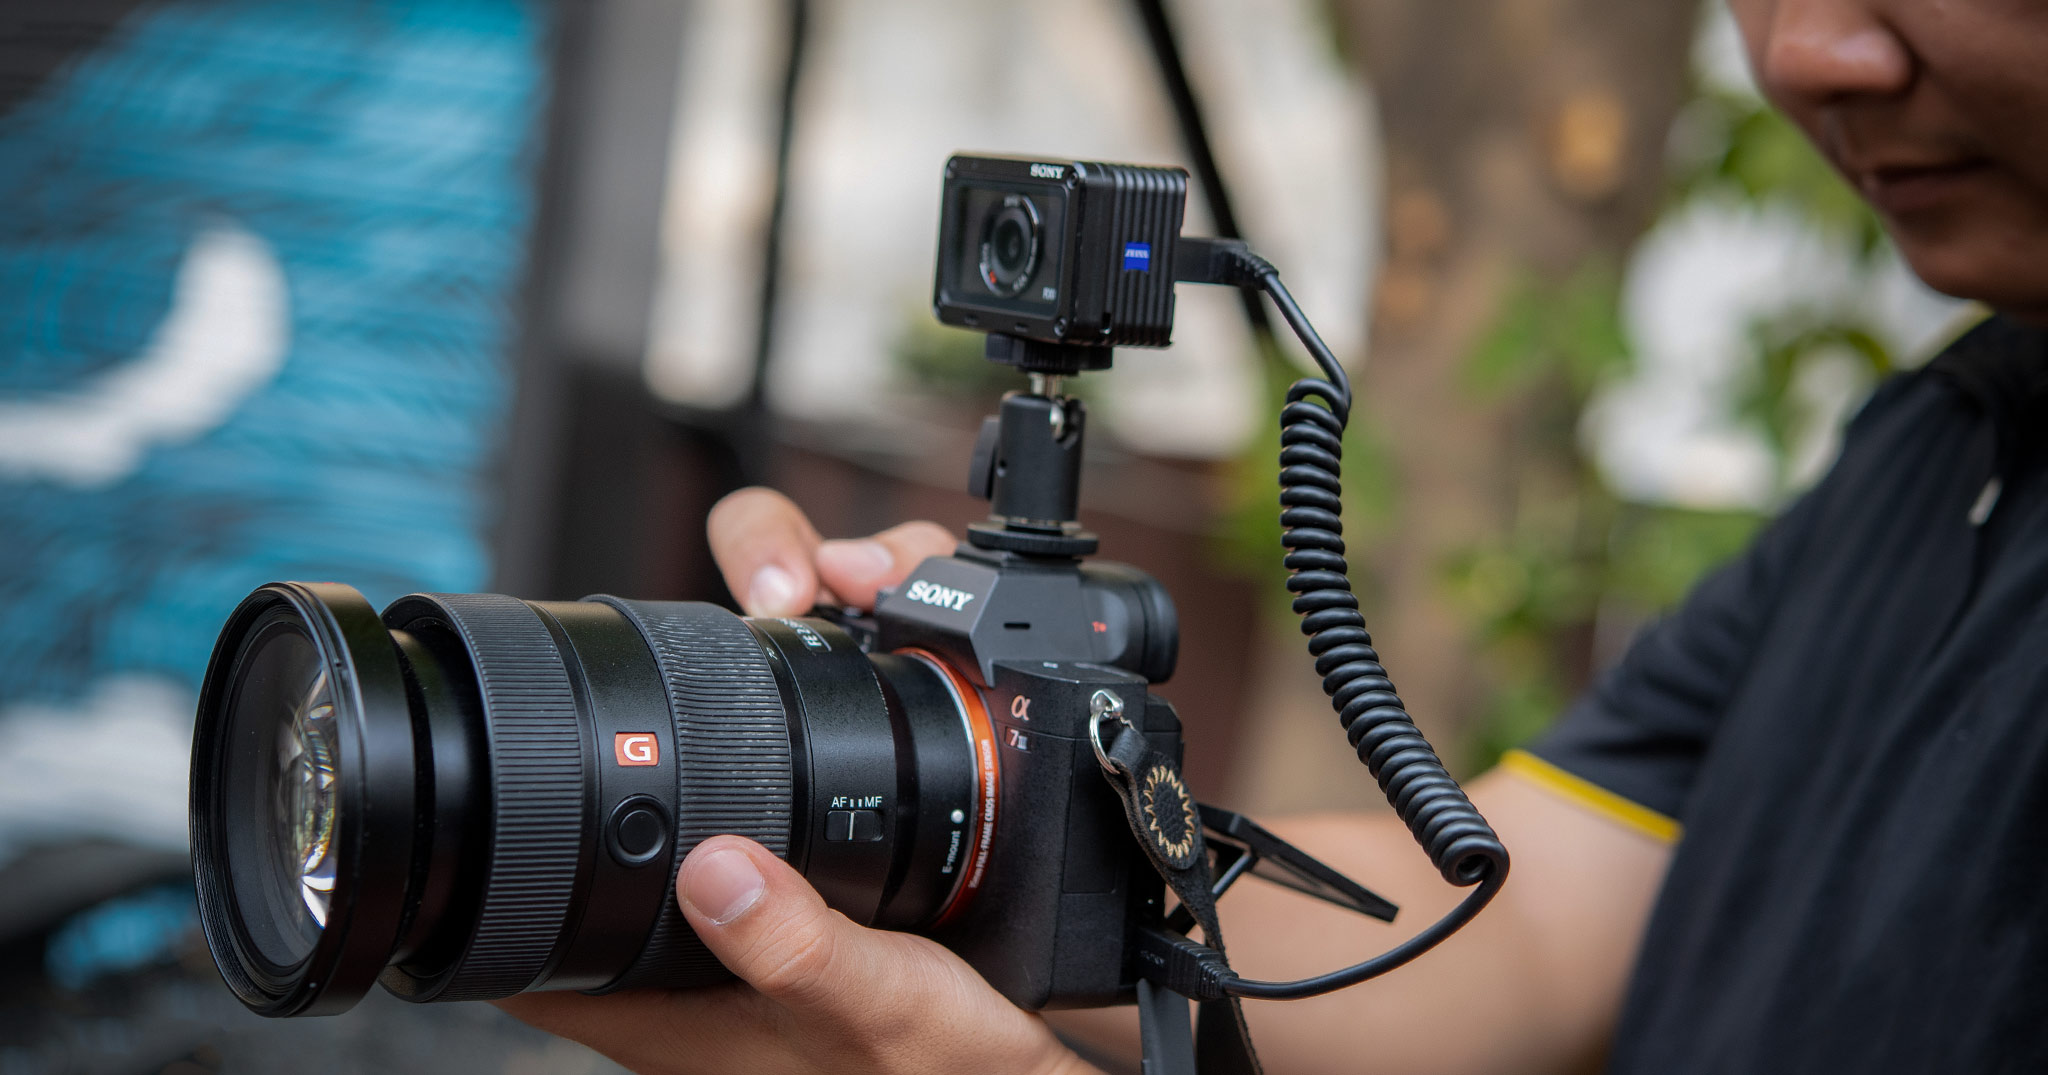 Trên tay cáp Sony VMC-MM2, giải pháp giúp chụp và quay video đồng thời giữa 2 camera Sony Alpha